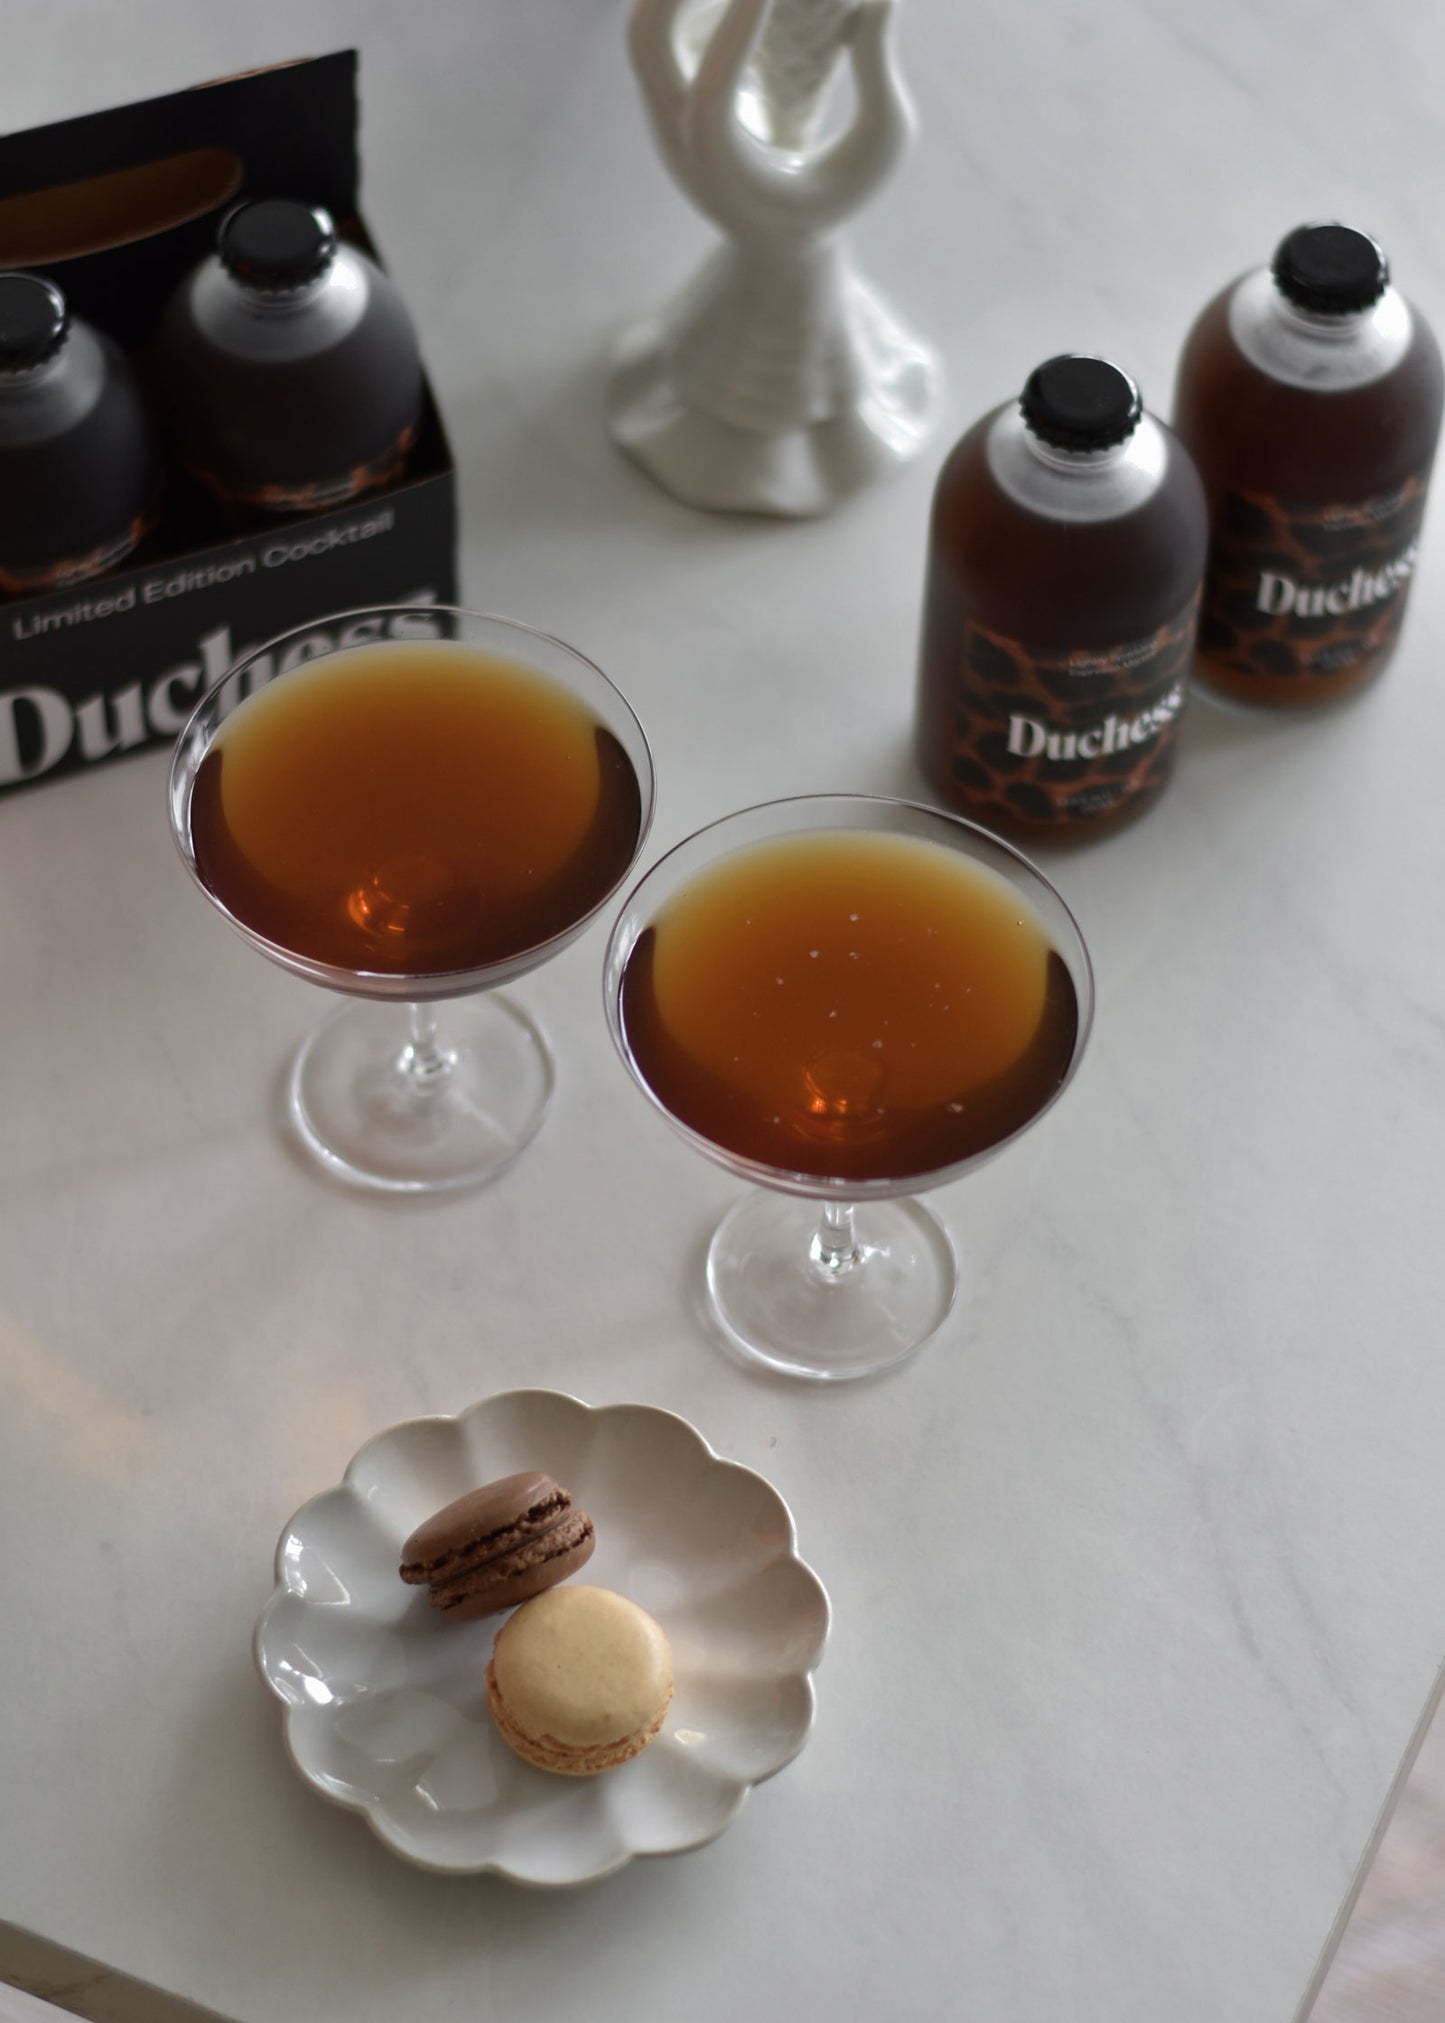 Limited Edition: Duchess Espresso Martini